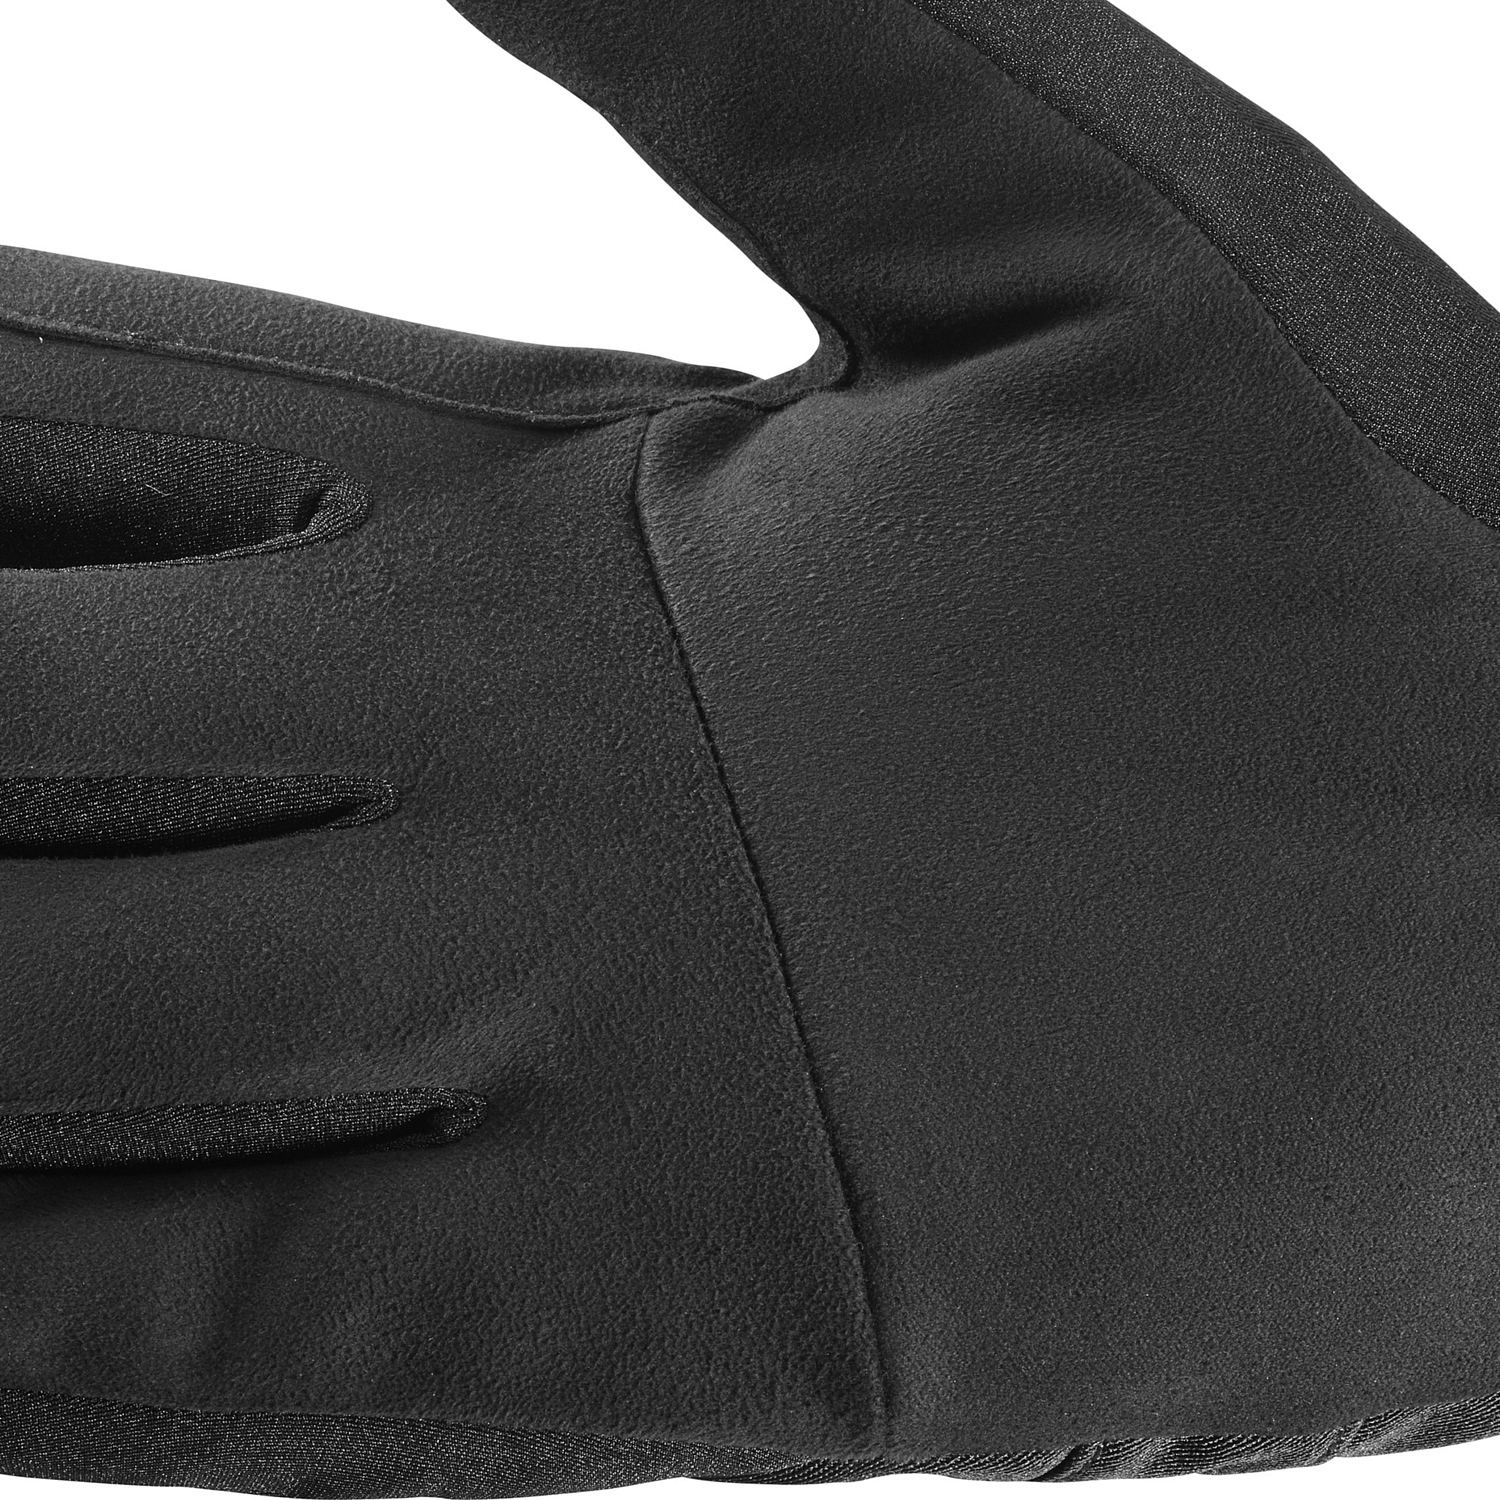 Перчатки горные Salomon 2018-19 RS WARM GLOVE U Black/Black